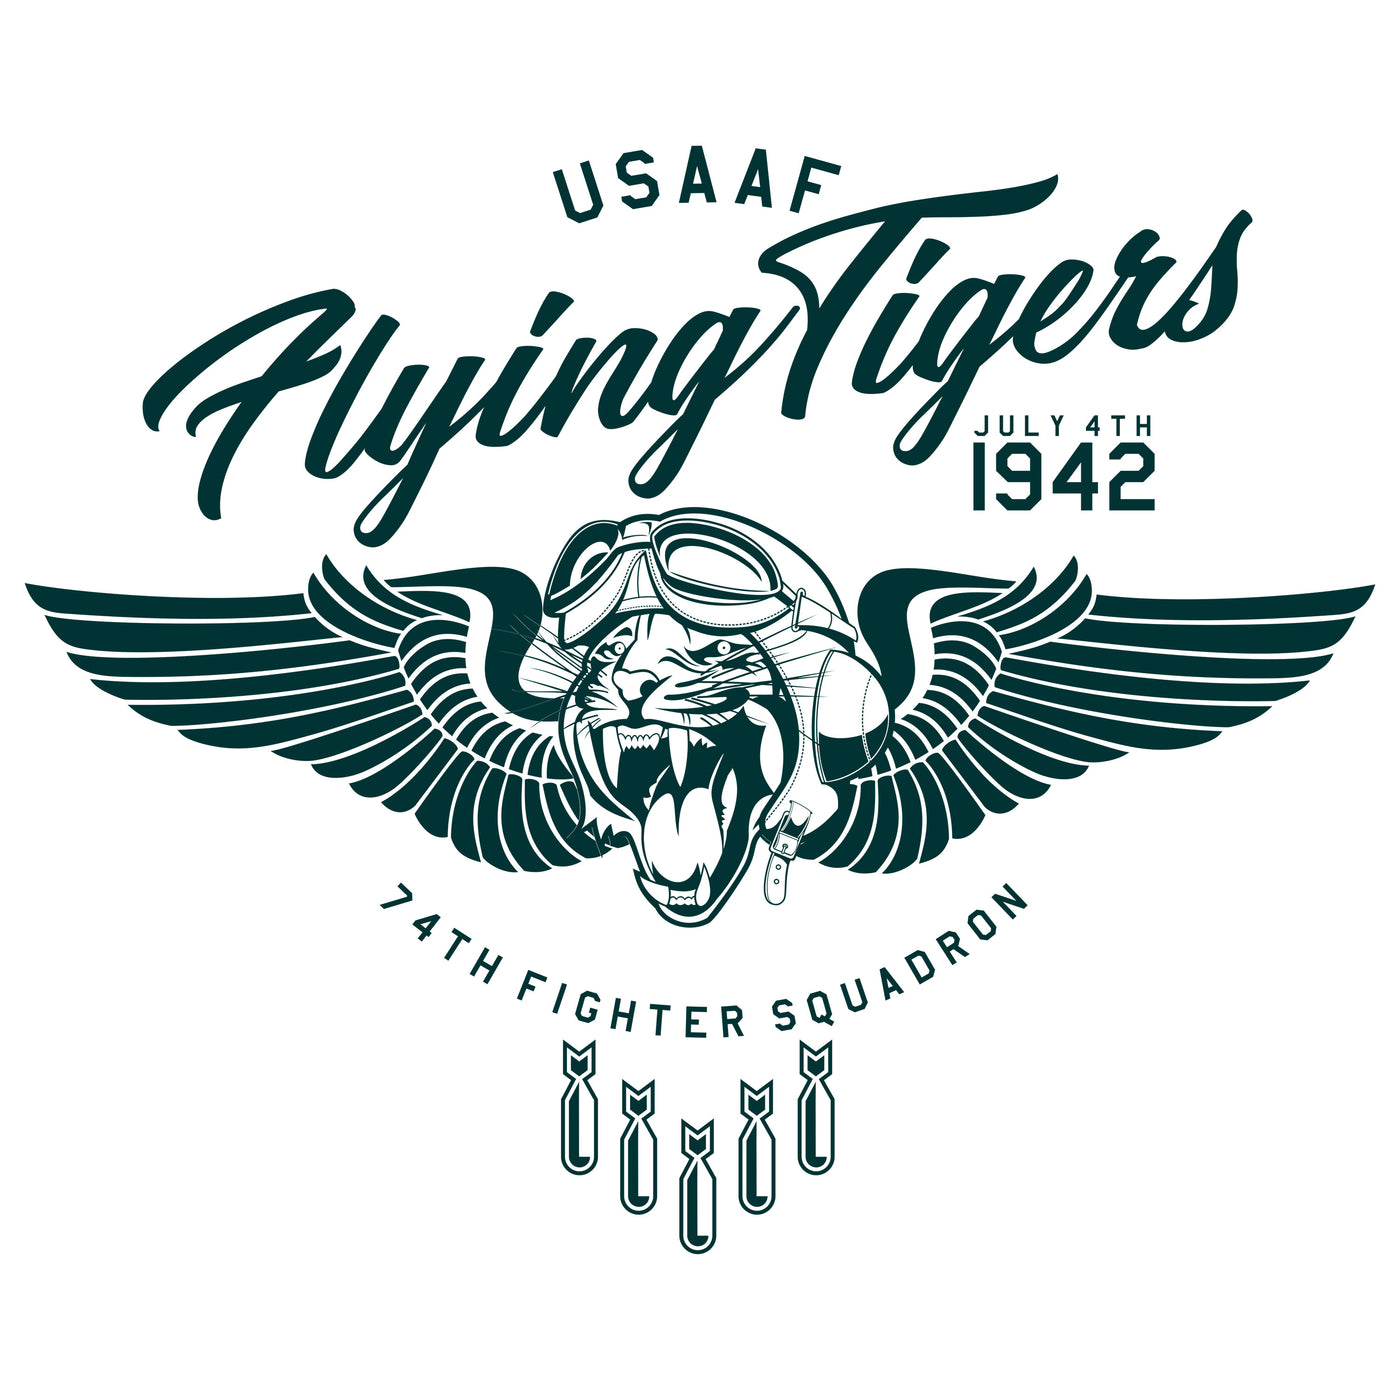 USAAF - Flying Tigers